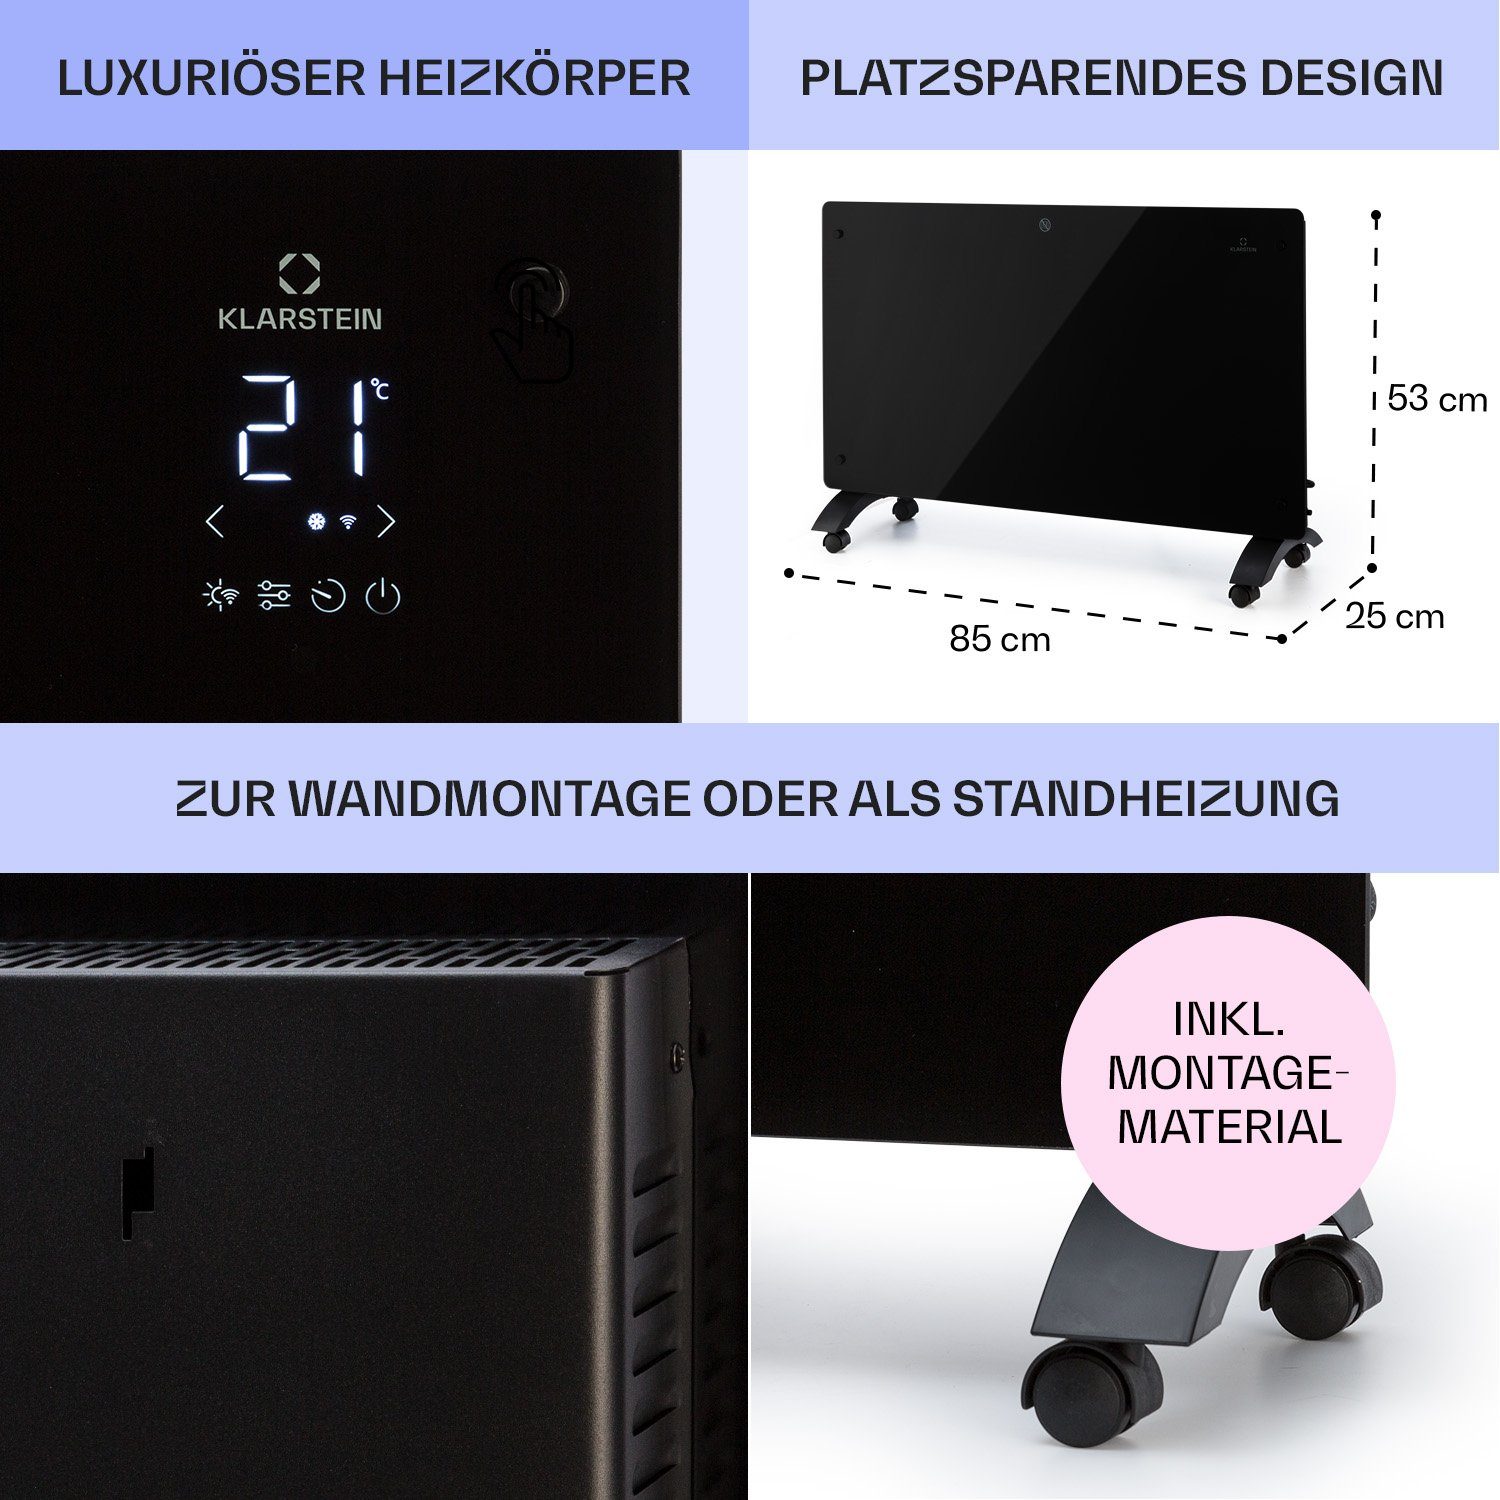 Klarstein Heizstrahler 1500, Heizstrahler Heizung Heizgerät Thermostat 1500 Bansin schwarz W, mit Crystal